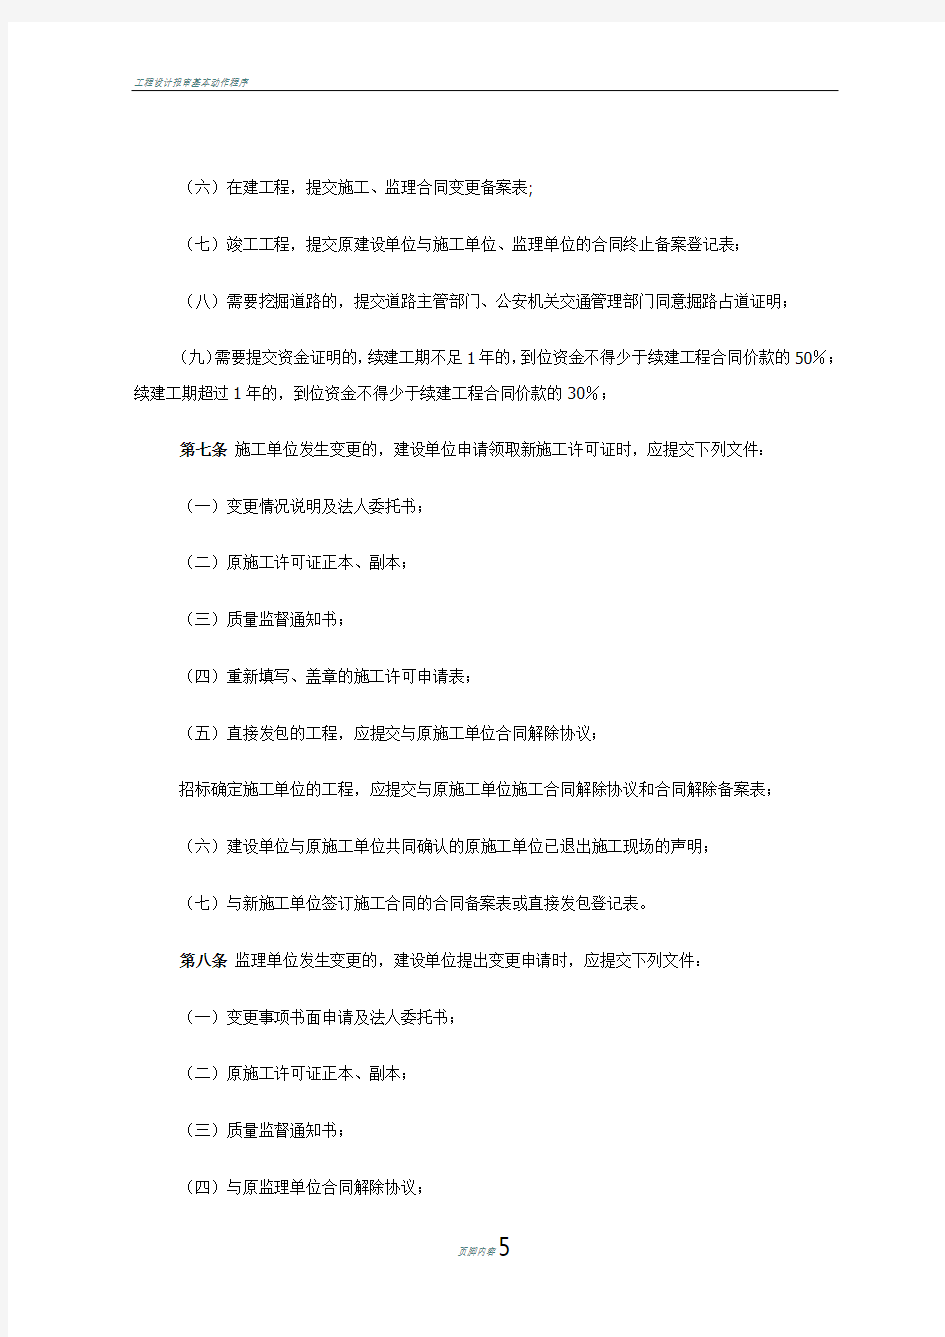 北京市建筑工程重新申领、变更及补发-施工许可证管理办法